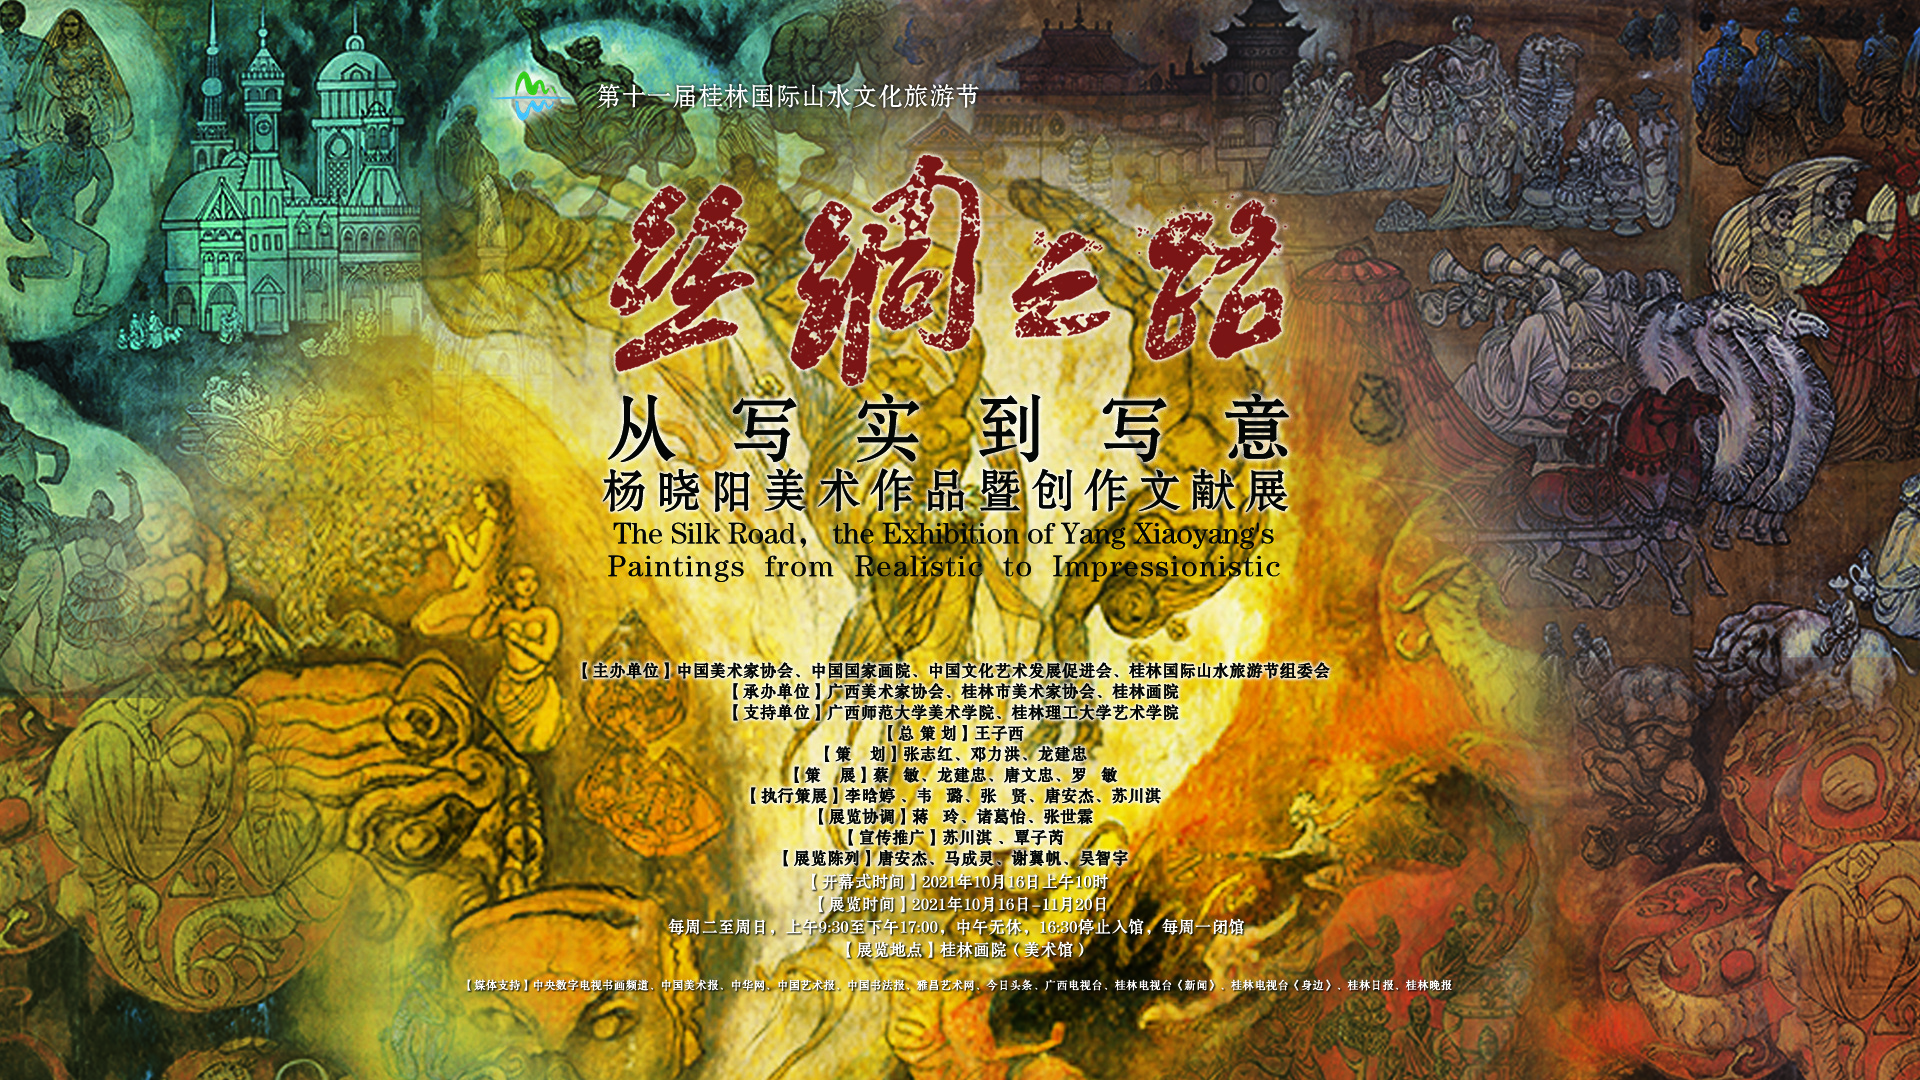 丝绸之路·从写实到写意——杨晓阳美术作品暨创作文献展